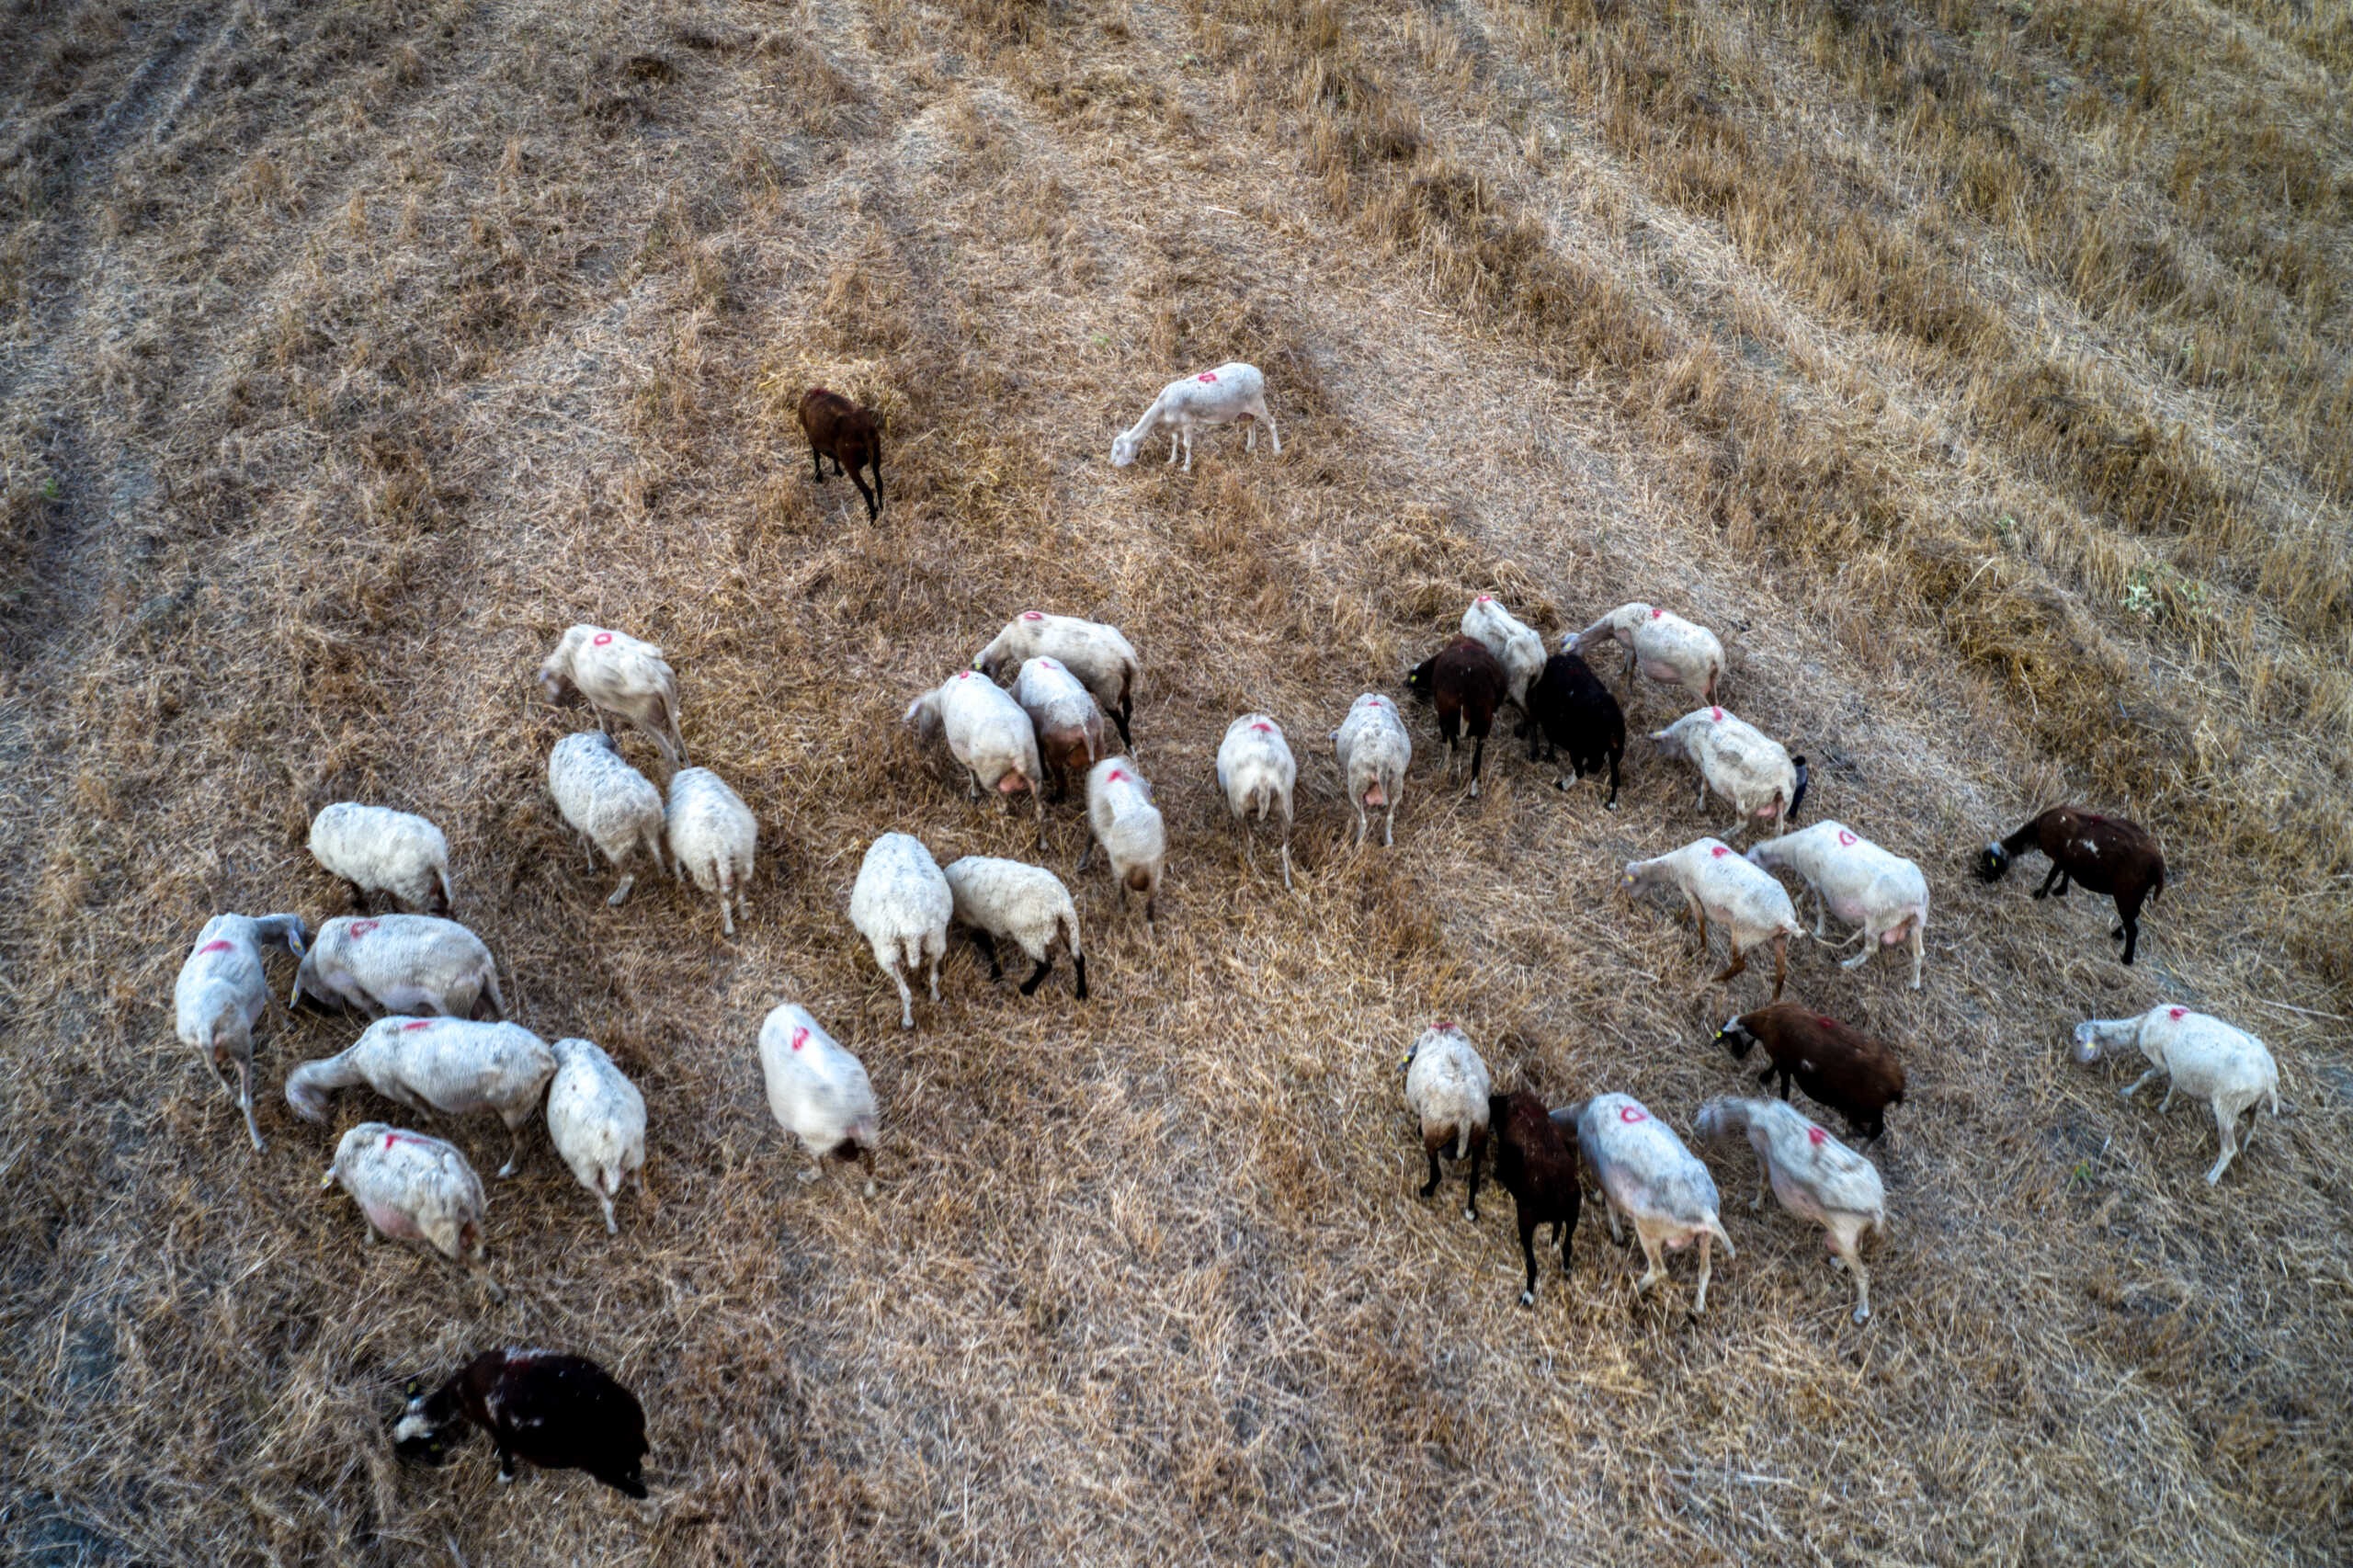 Πανώλη στα αιγοπρόβατα: Αγωνία για τους ελέγχους, επιφυλακτικότητα στην αγορά κρέατος και αιτήματα για υπερδιπλάσιες αποζημιώσεις